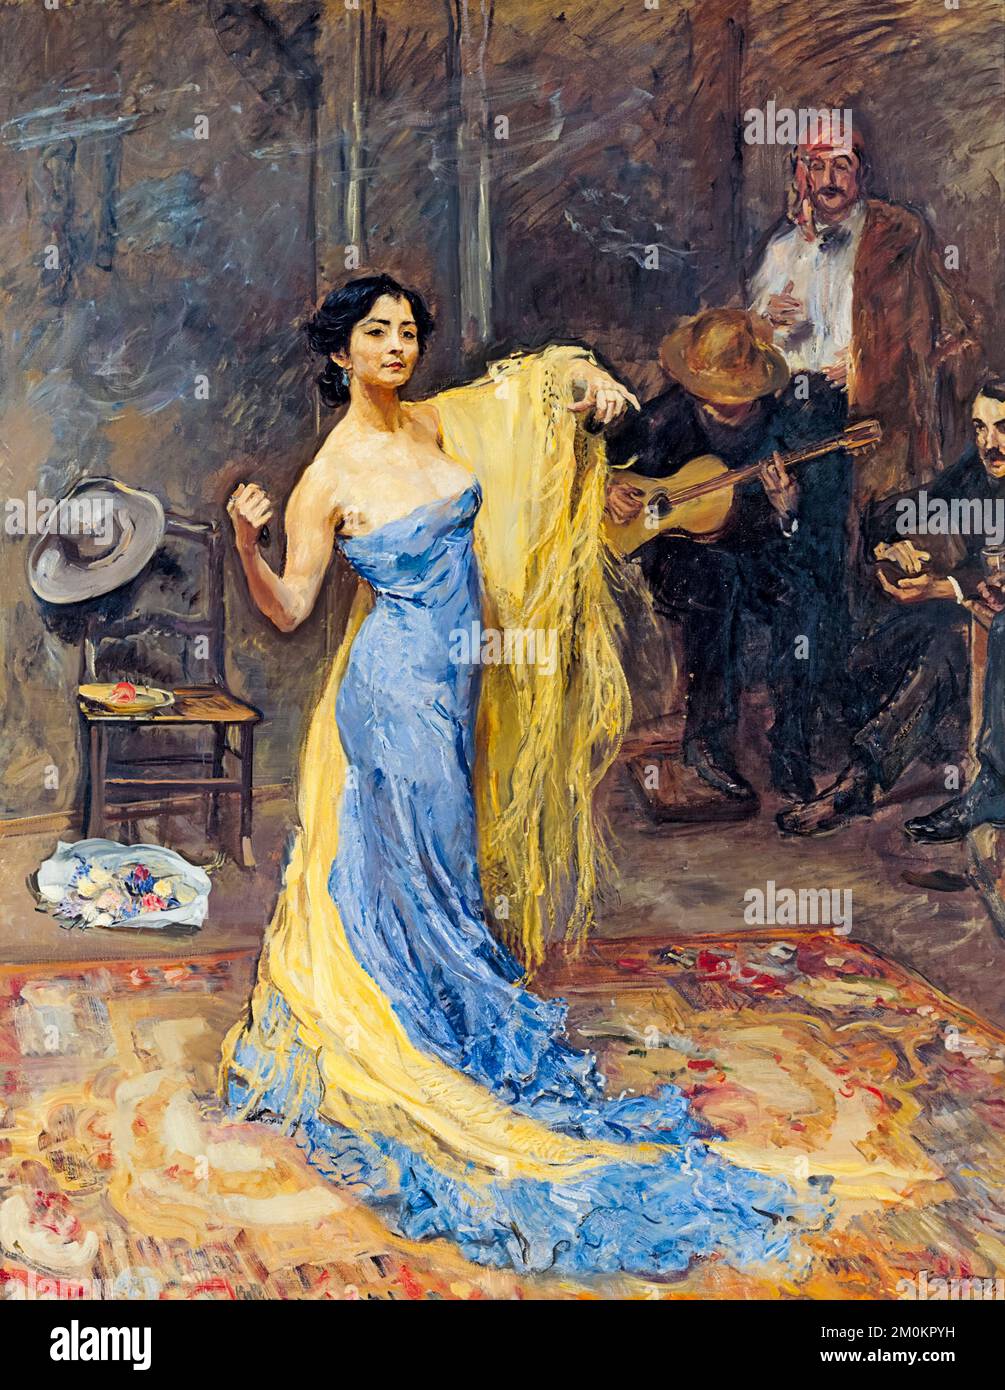 Portrait de la danseuse Marietta di Rigardo, peinture à l'huile sur toile par Max Slevogt, 1904 Banque D'Images